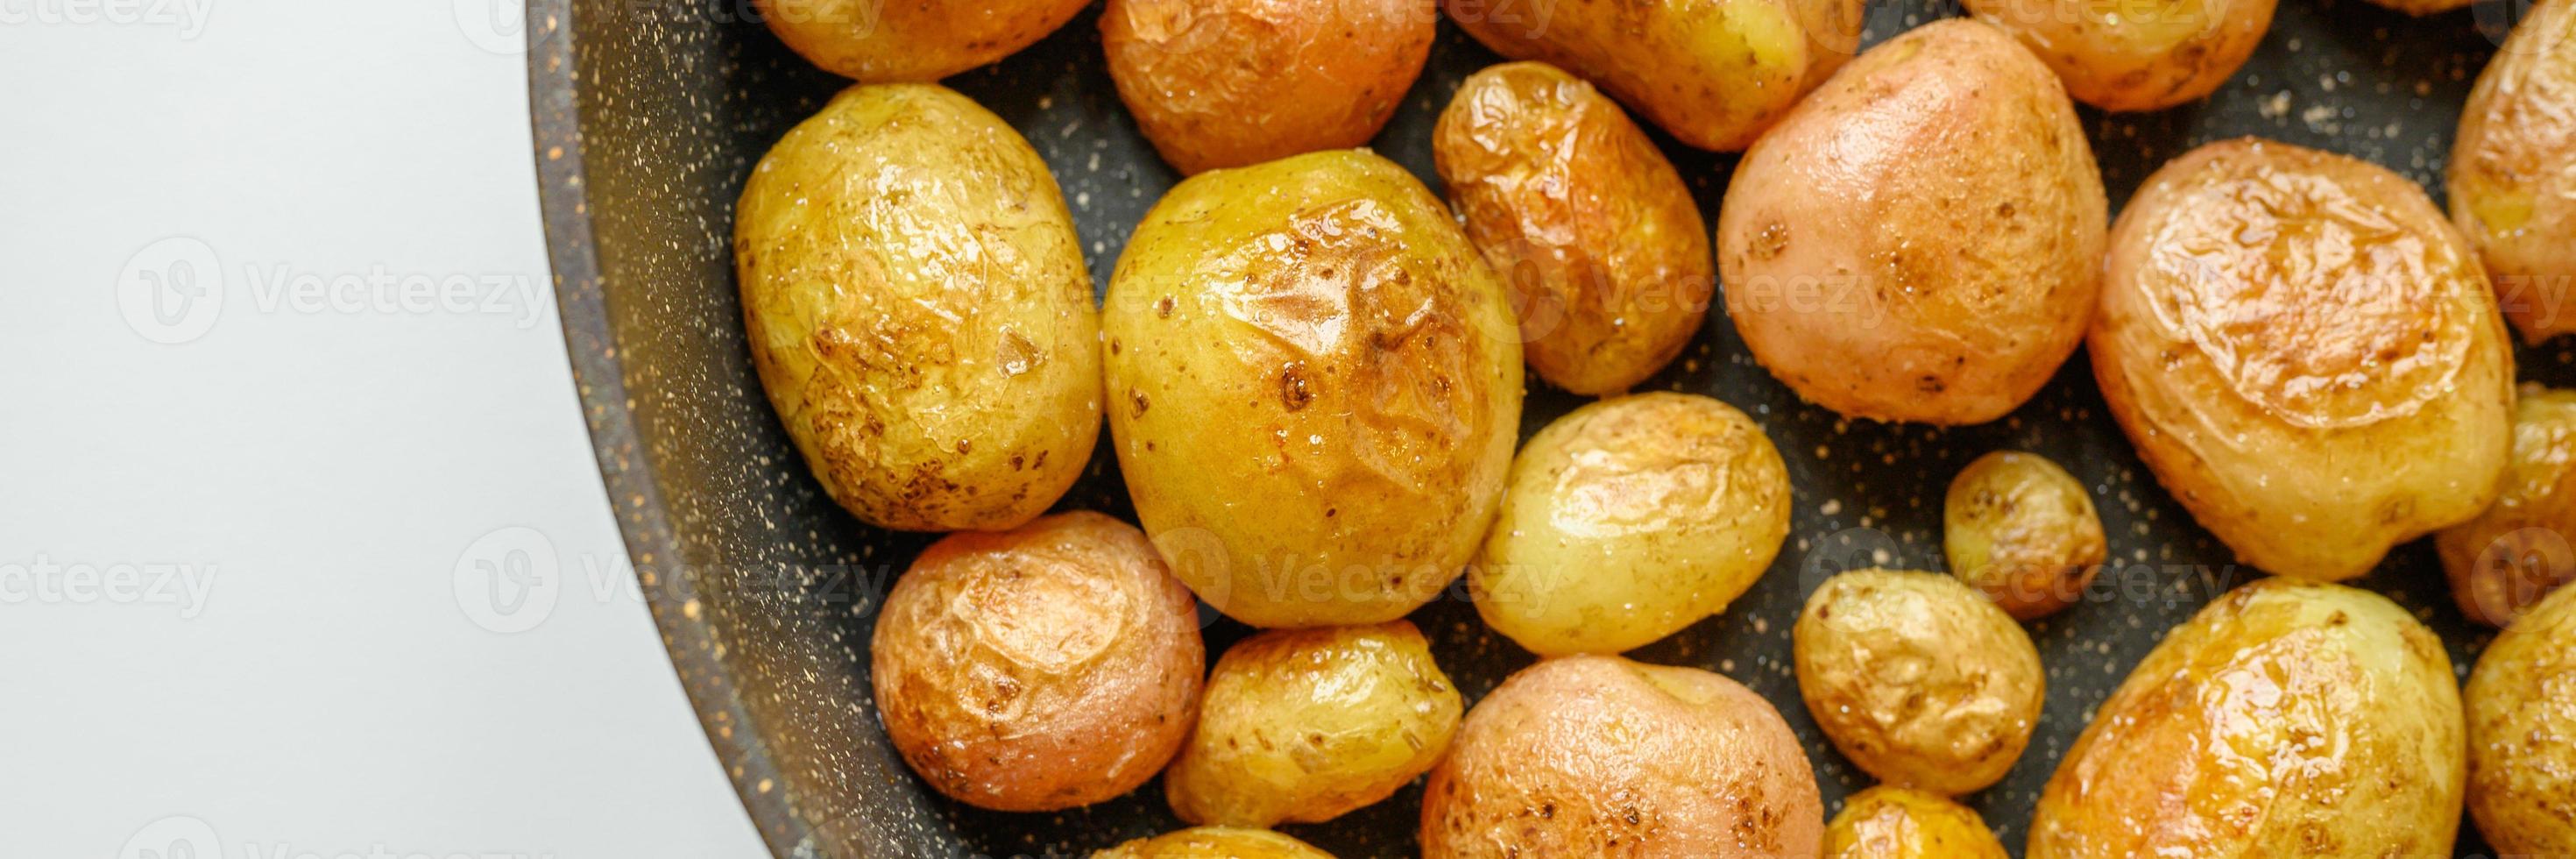 pommes de terre rôties dorées dans la peau. bannière photo